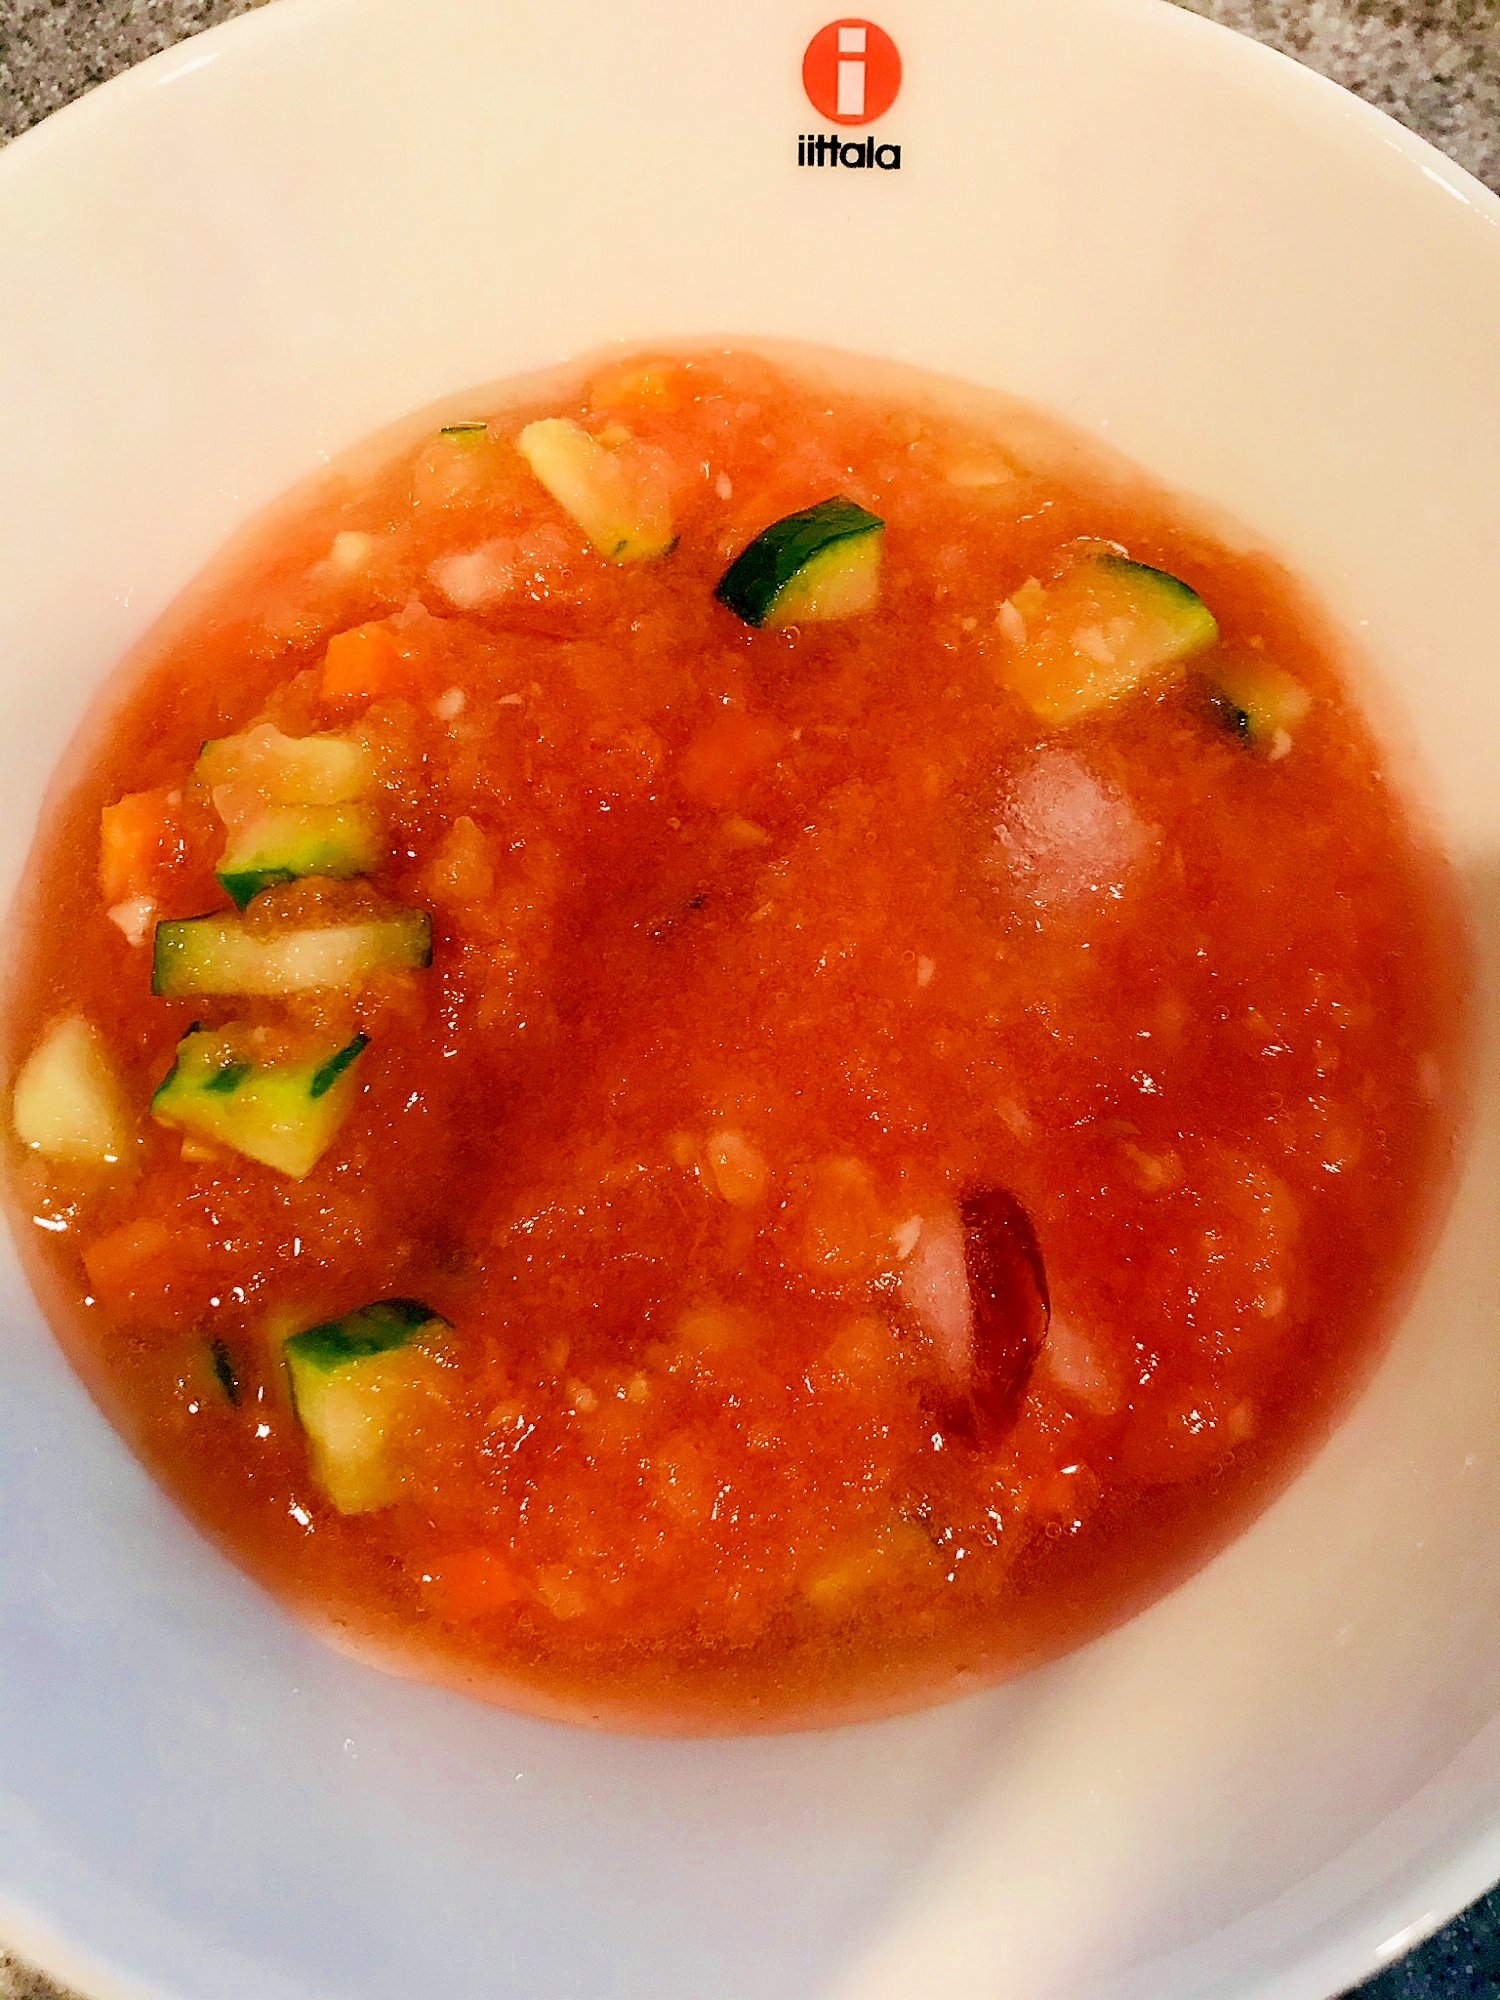 暑い日に★冷たいトマトスープ